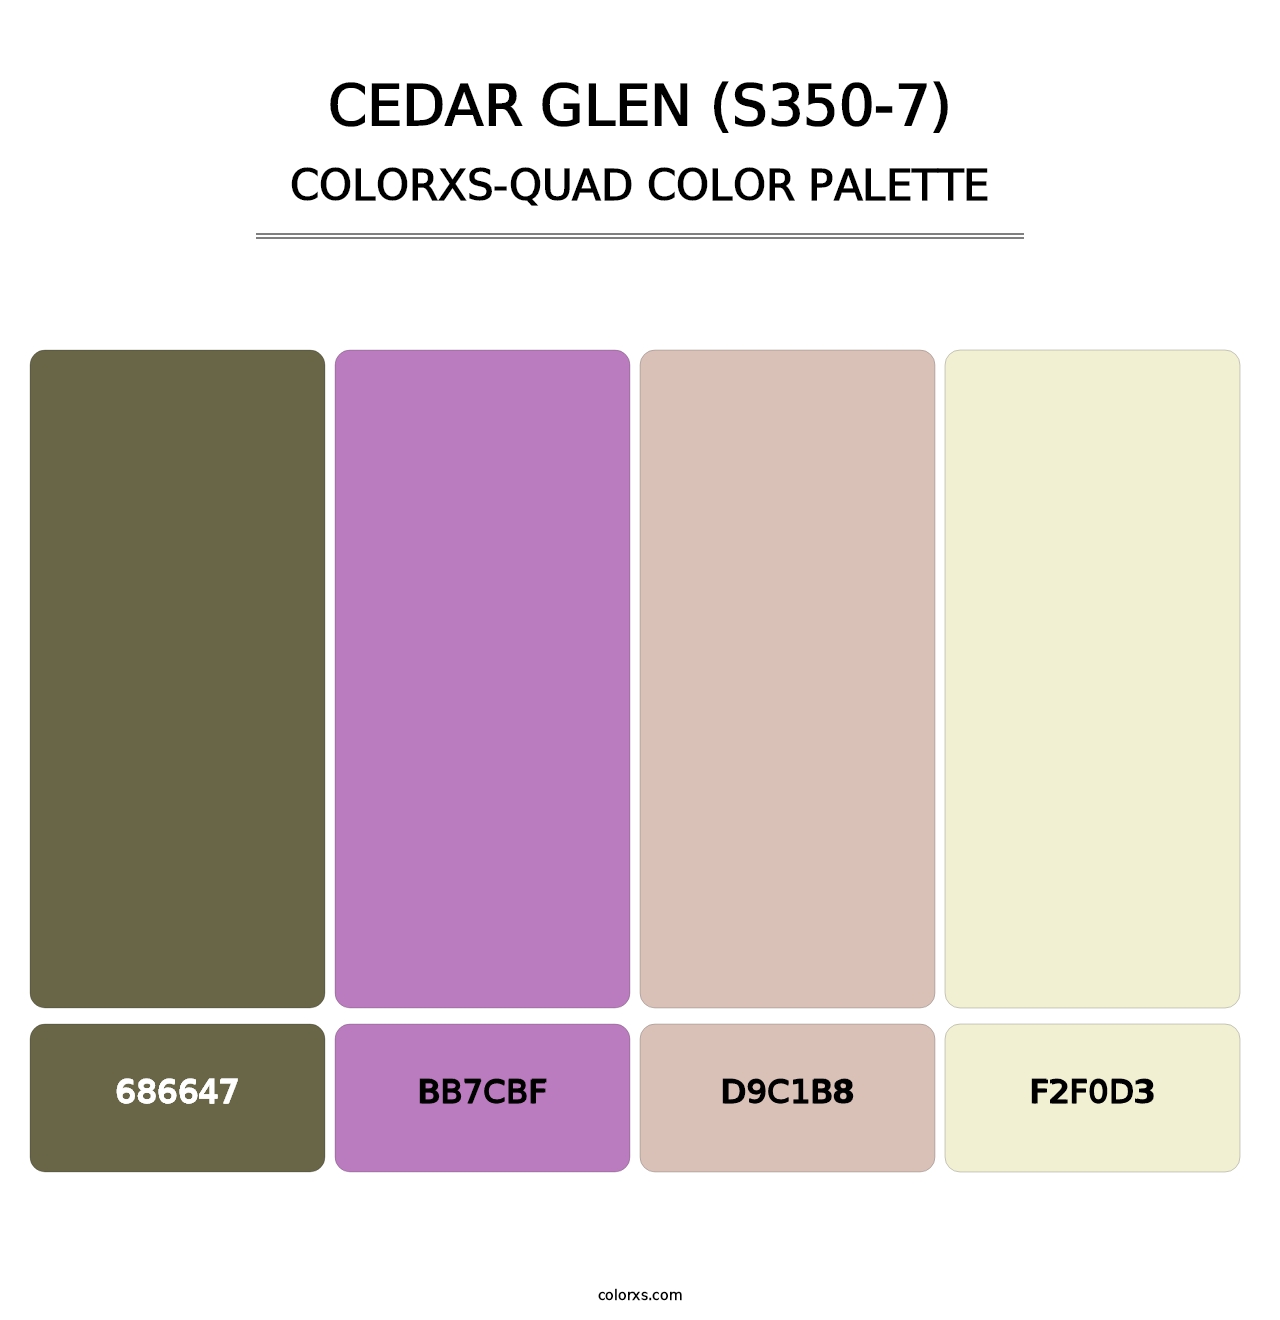 Cedar Glen (S350-7) - Colorxs Quad Palette